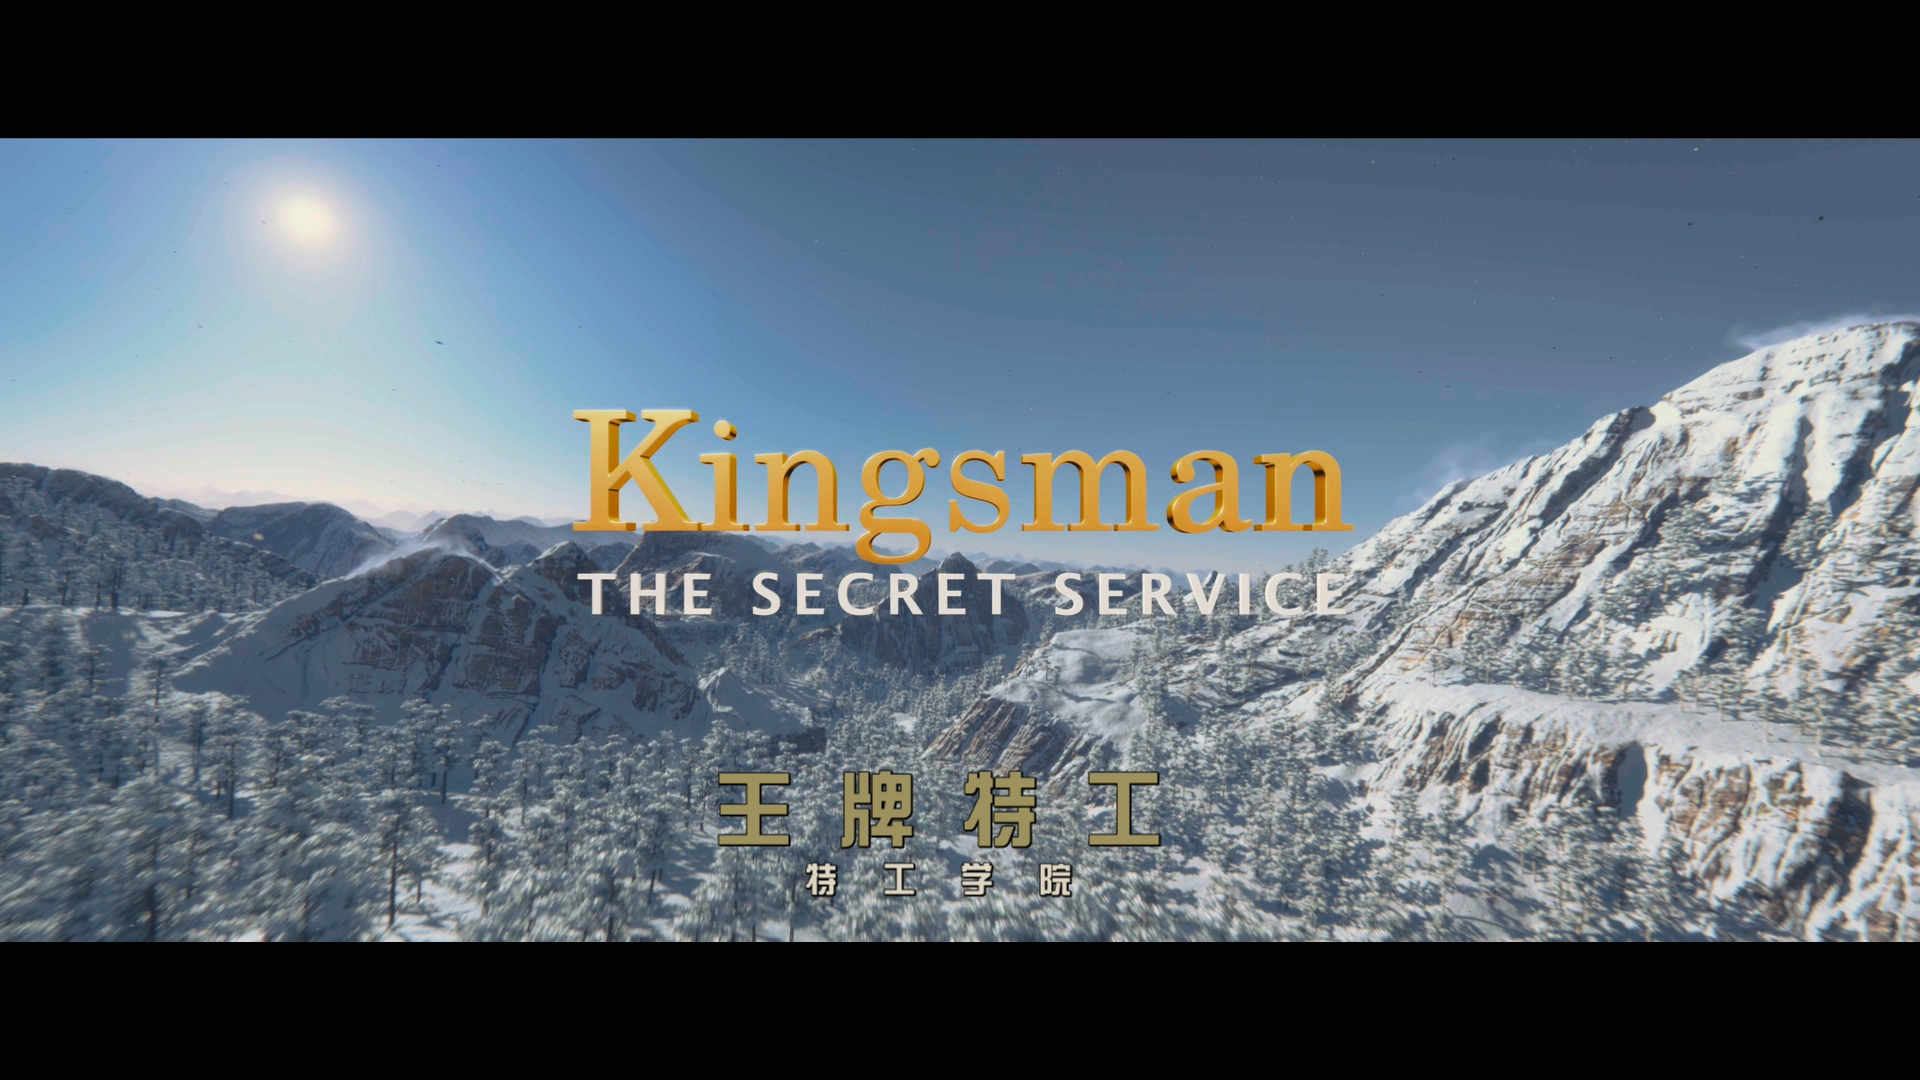 [ 王牌特工:特工学院 ] [DIY简繁双语字幕] [公主美臀完整版] [4K UHD原盘] Kingsman The Secret Service 2015 2160p UHD Blu-ray HEVC DTS-HD MA 7.1-wezjh@OurBits     [51.83 GB]-2.jpg